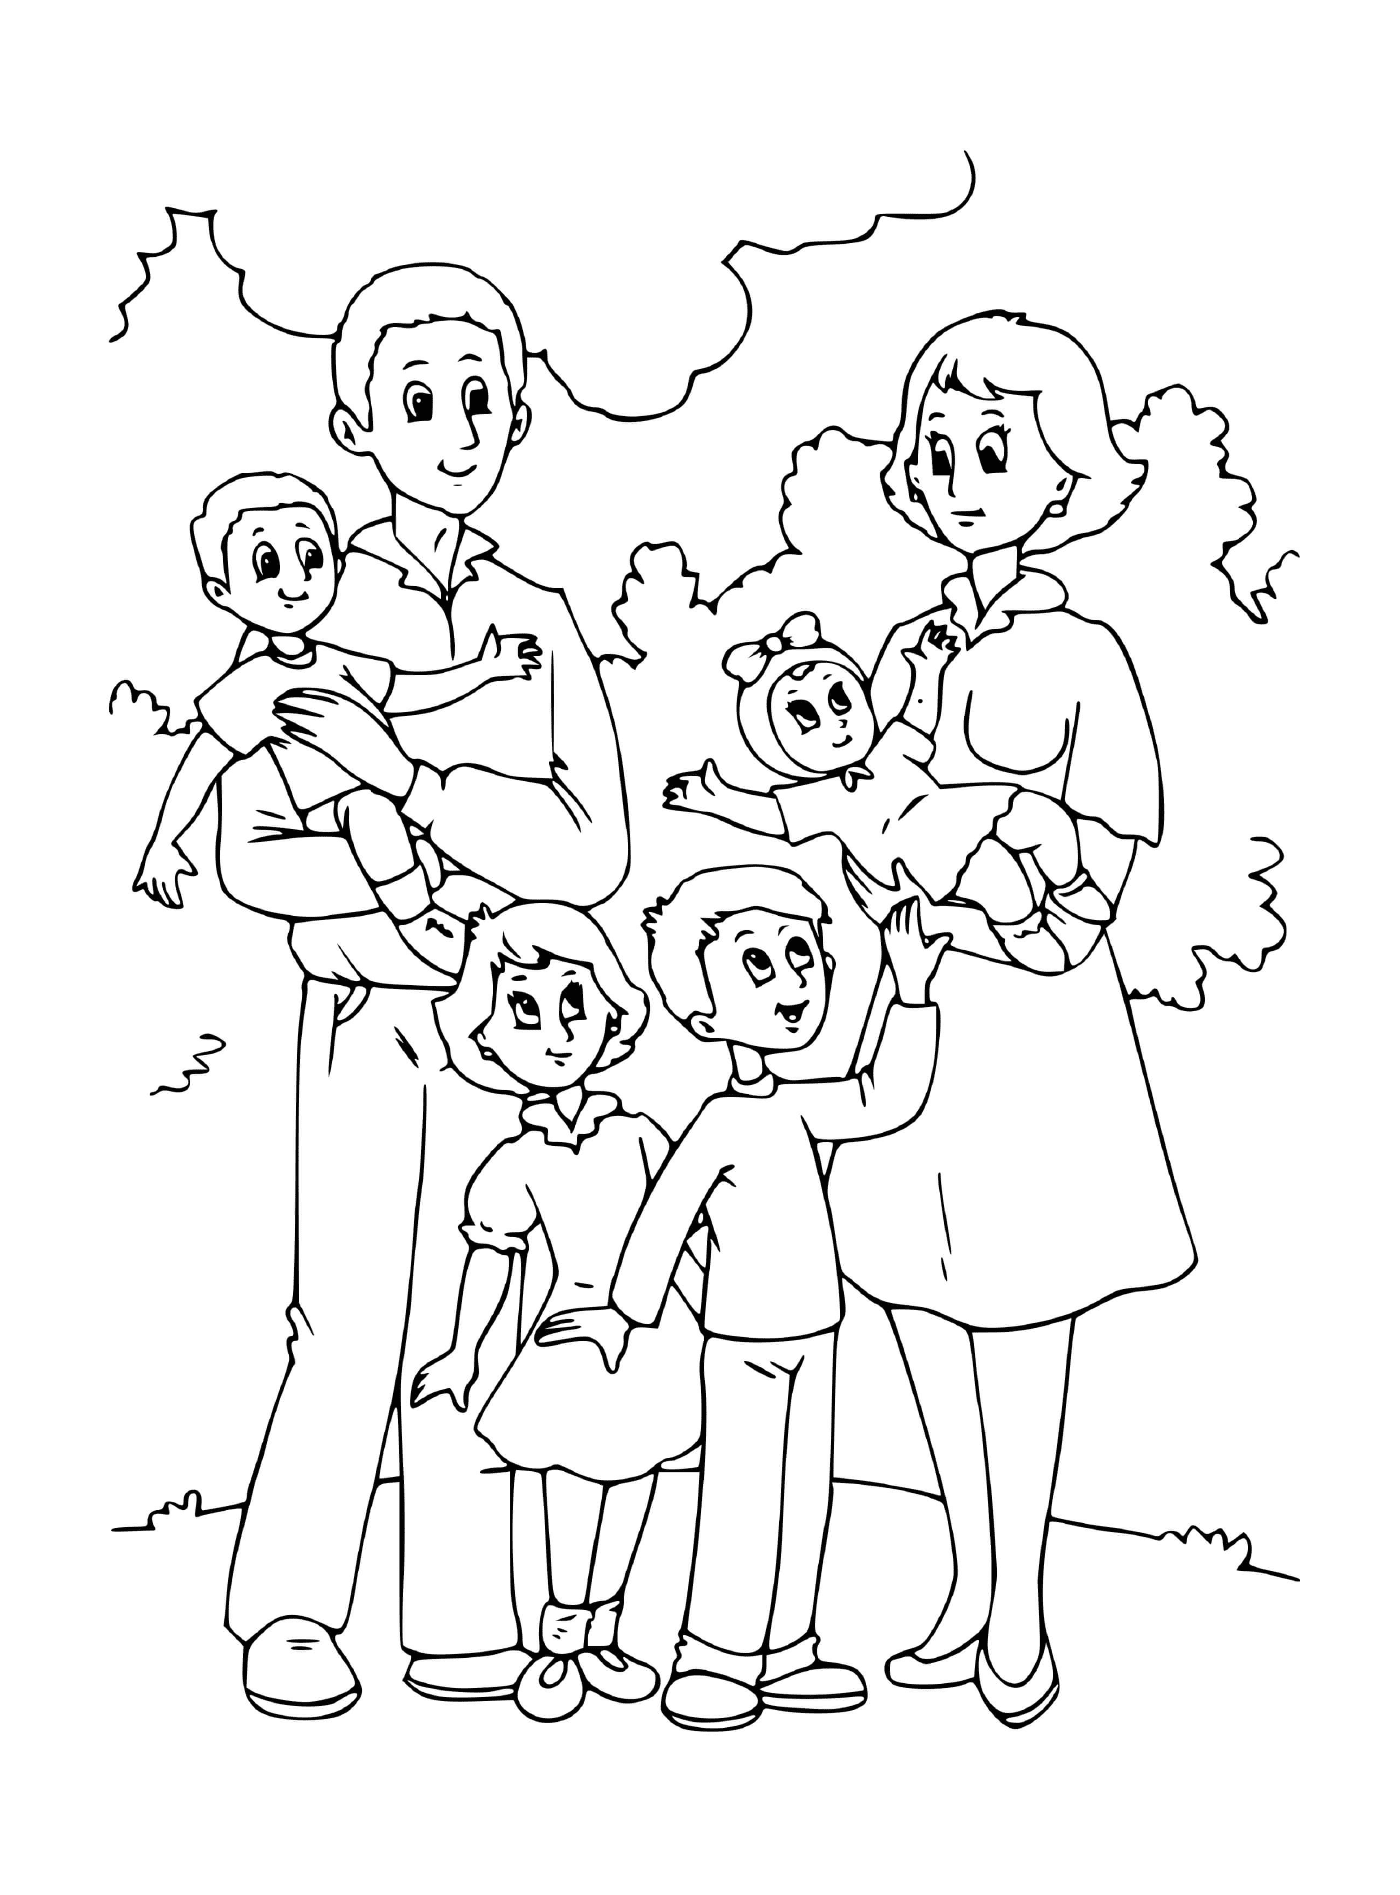   Une famille avec plusieurs enfants et leurs parents 